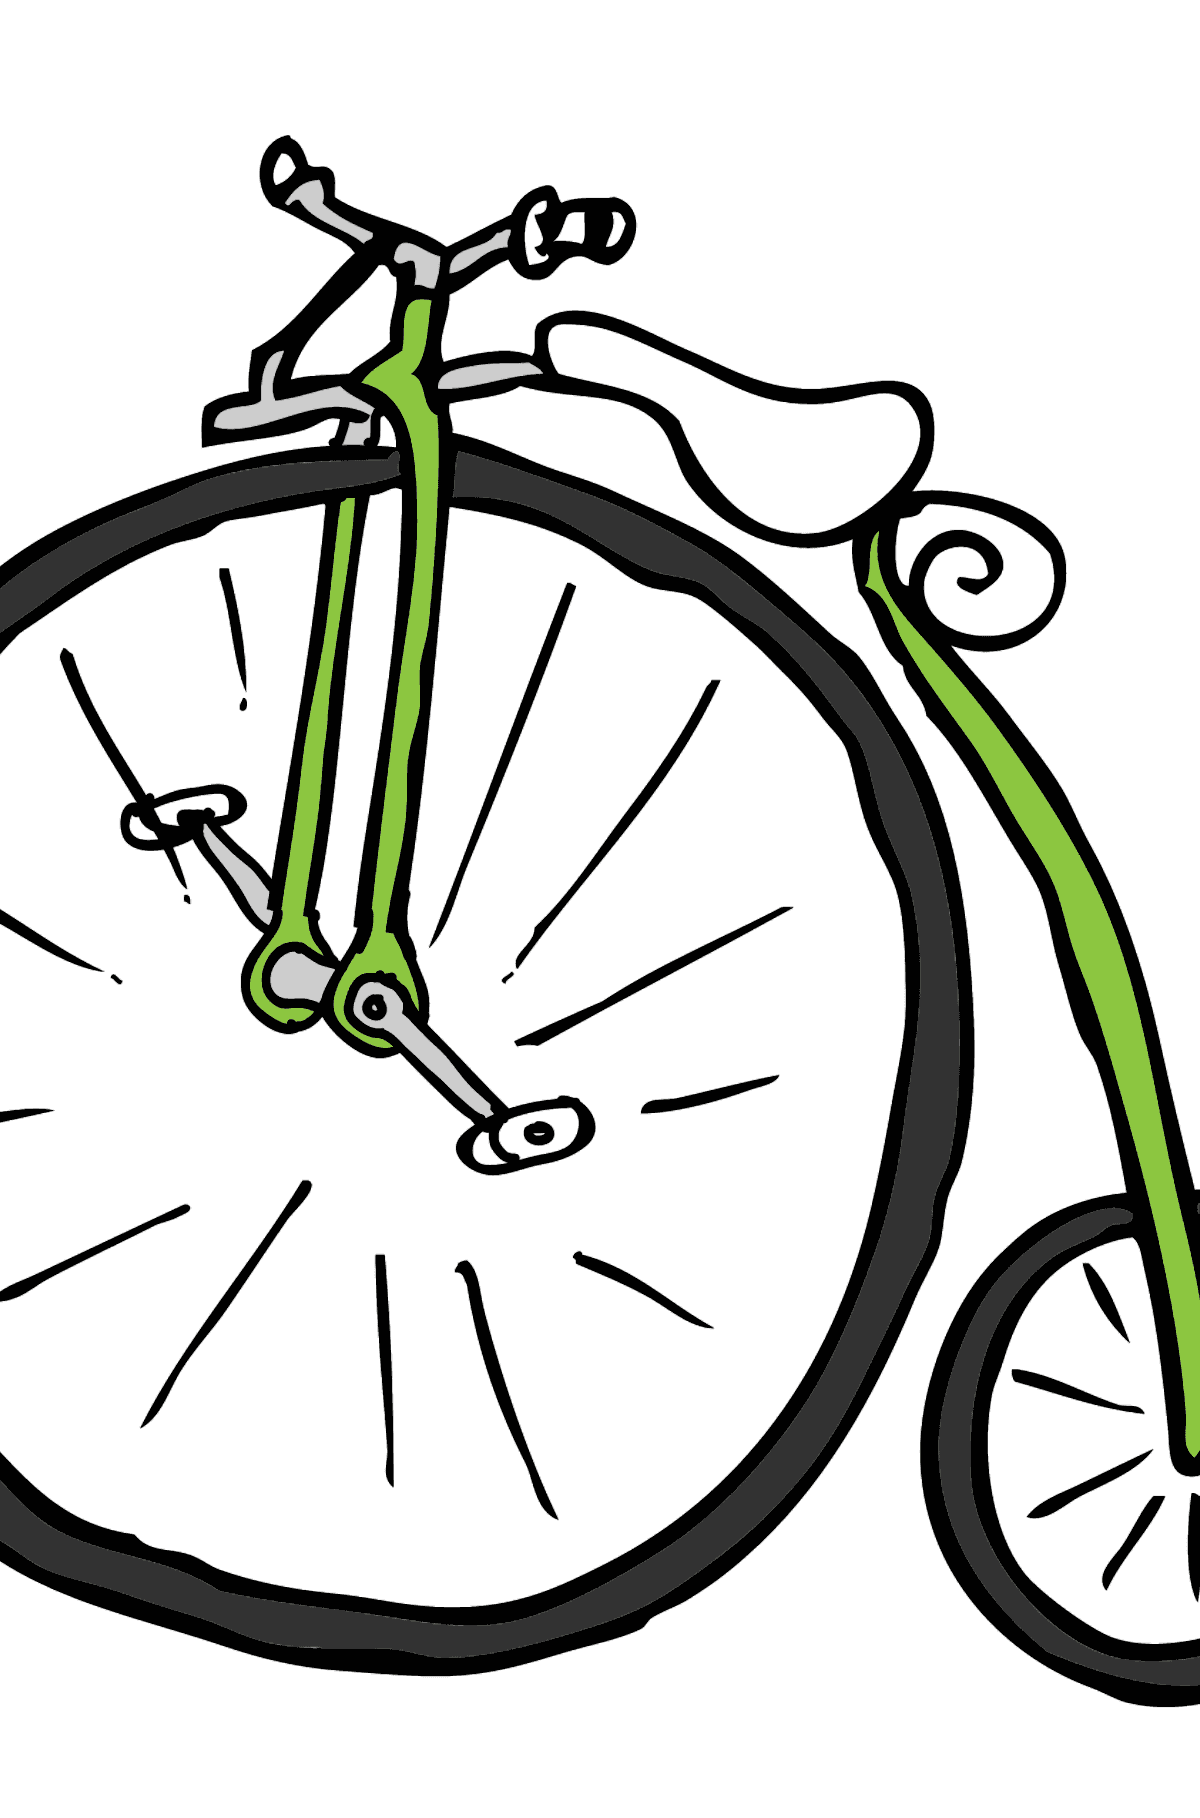 Coloriage - Un cycle à roues élevées - Unicycle - Malvorlagen für Kinder